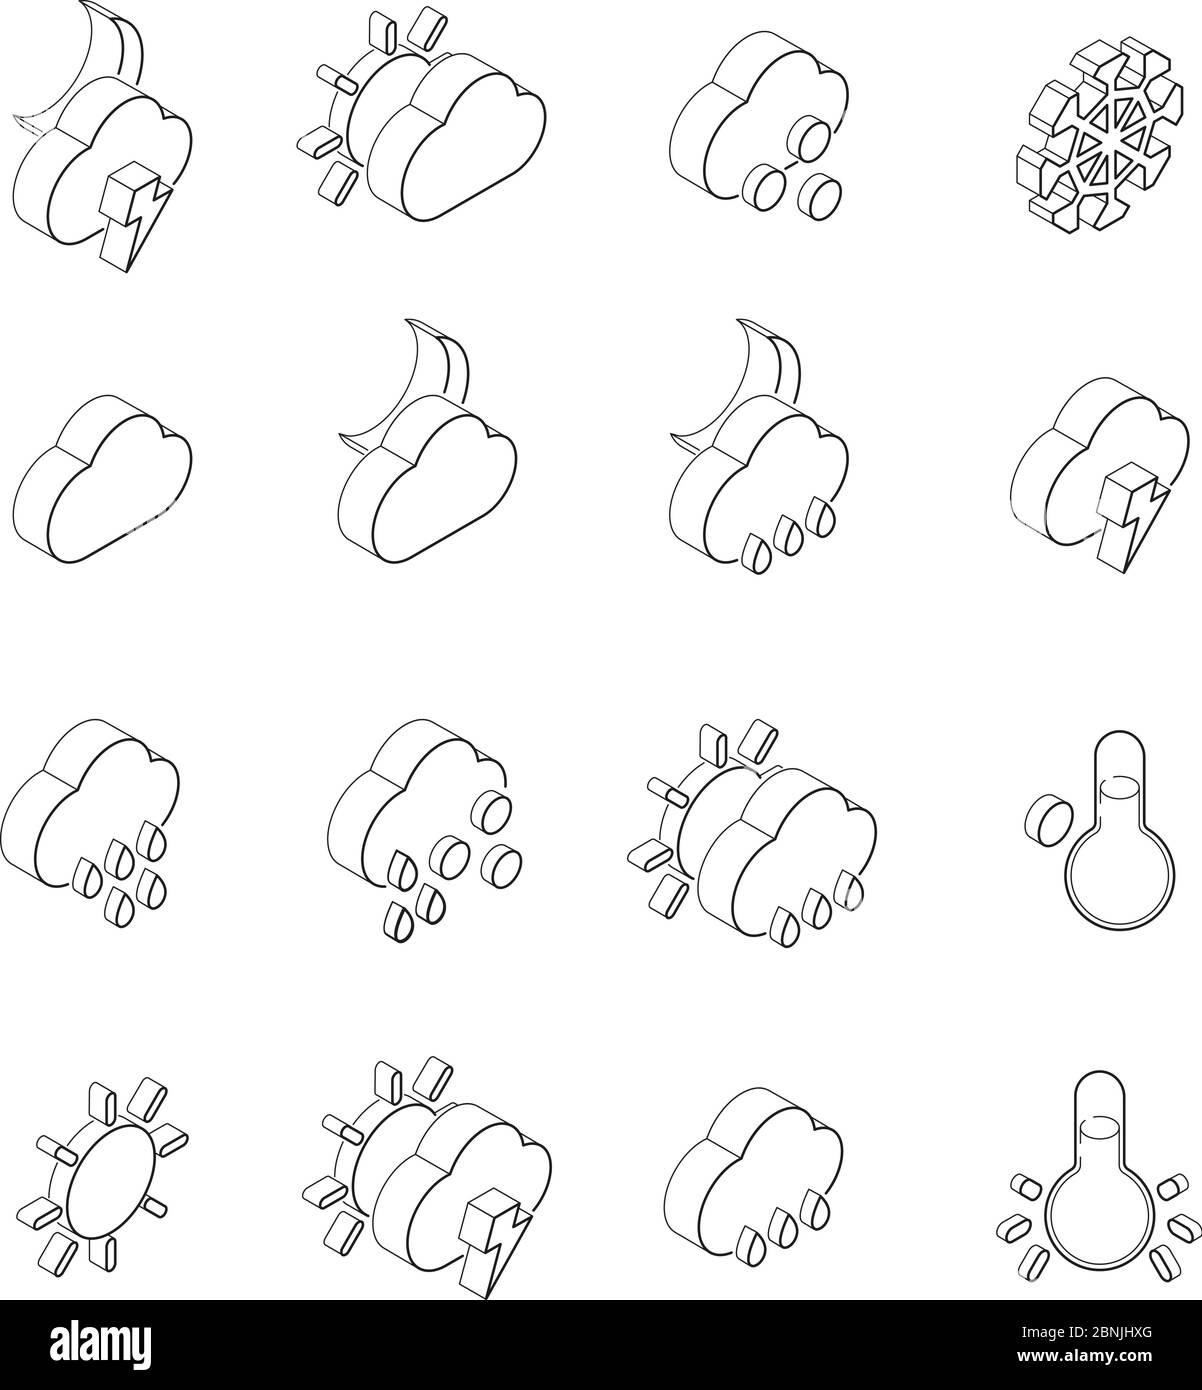 Lineare Illustrationen von Wettersymbolen. Isometrische Symbole setzen Isolieren auf Weiß Stock Vektor